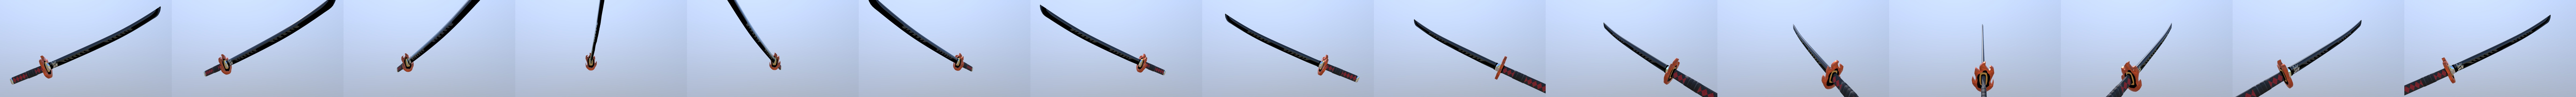 sword katana roblox